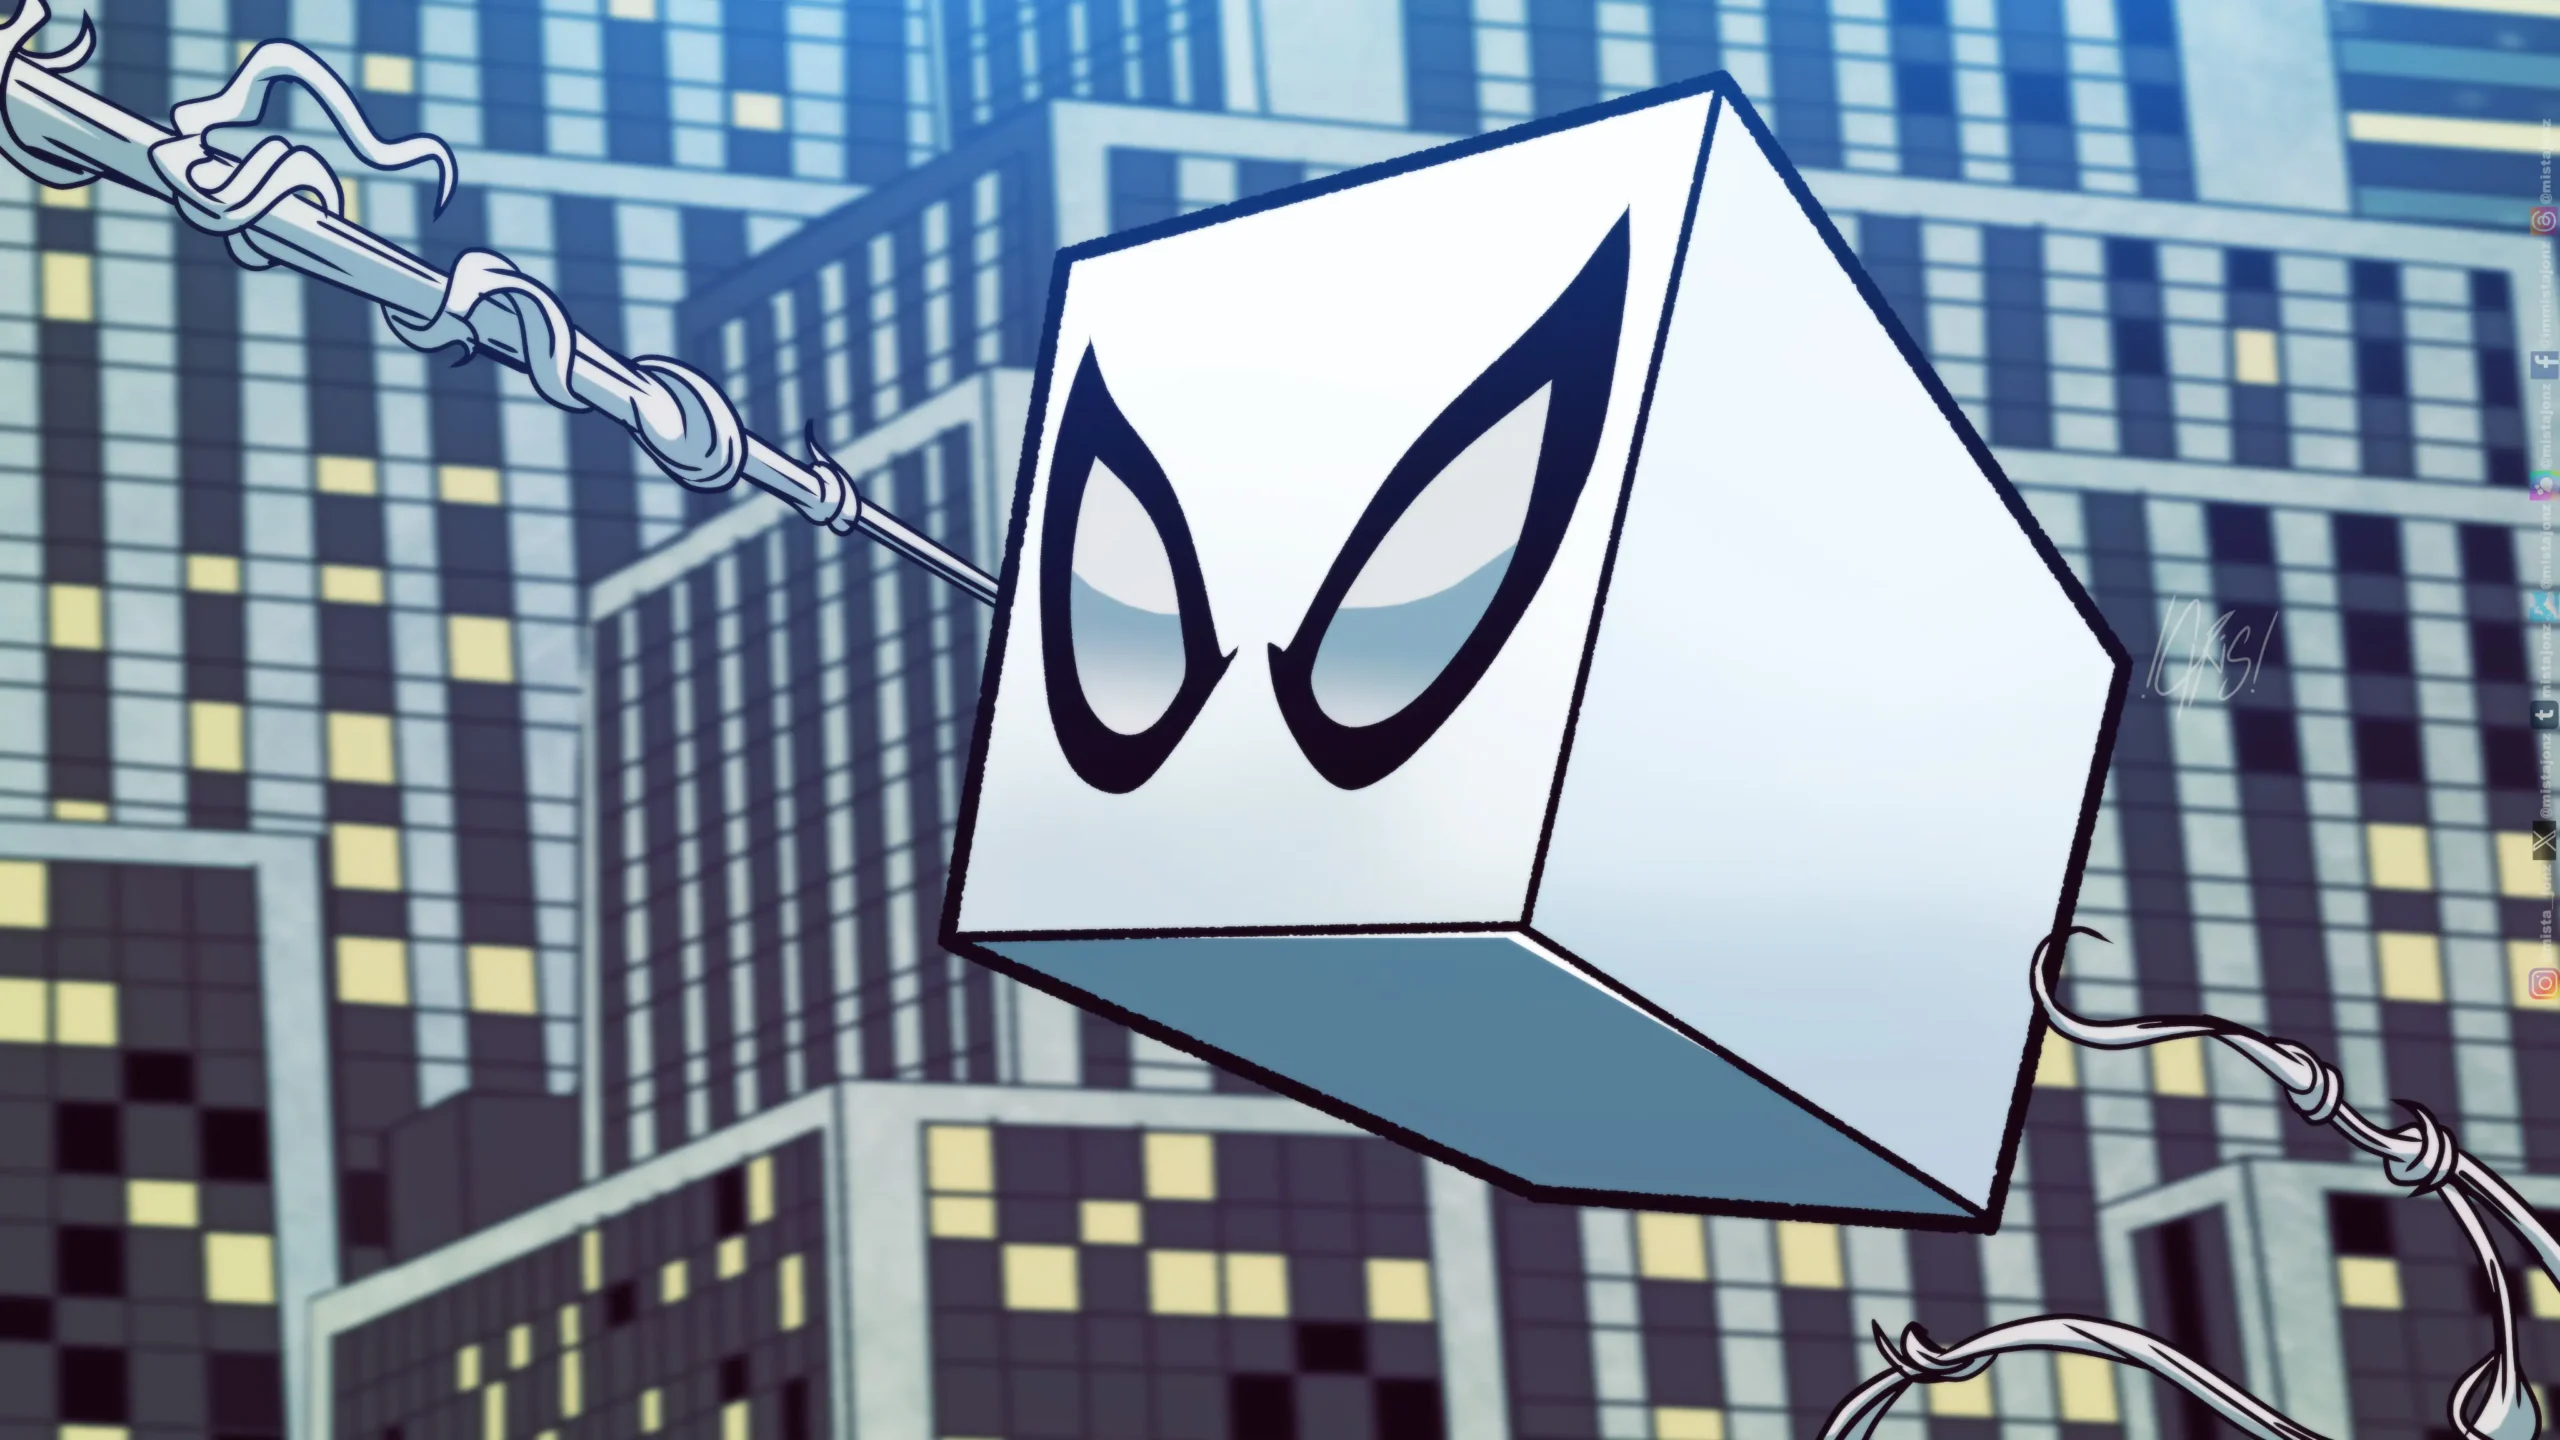 Spider-Man 2: Как Человек-паук превратился в Уникальное Явление – Куб-паука!